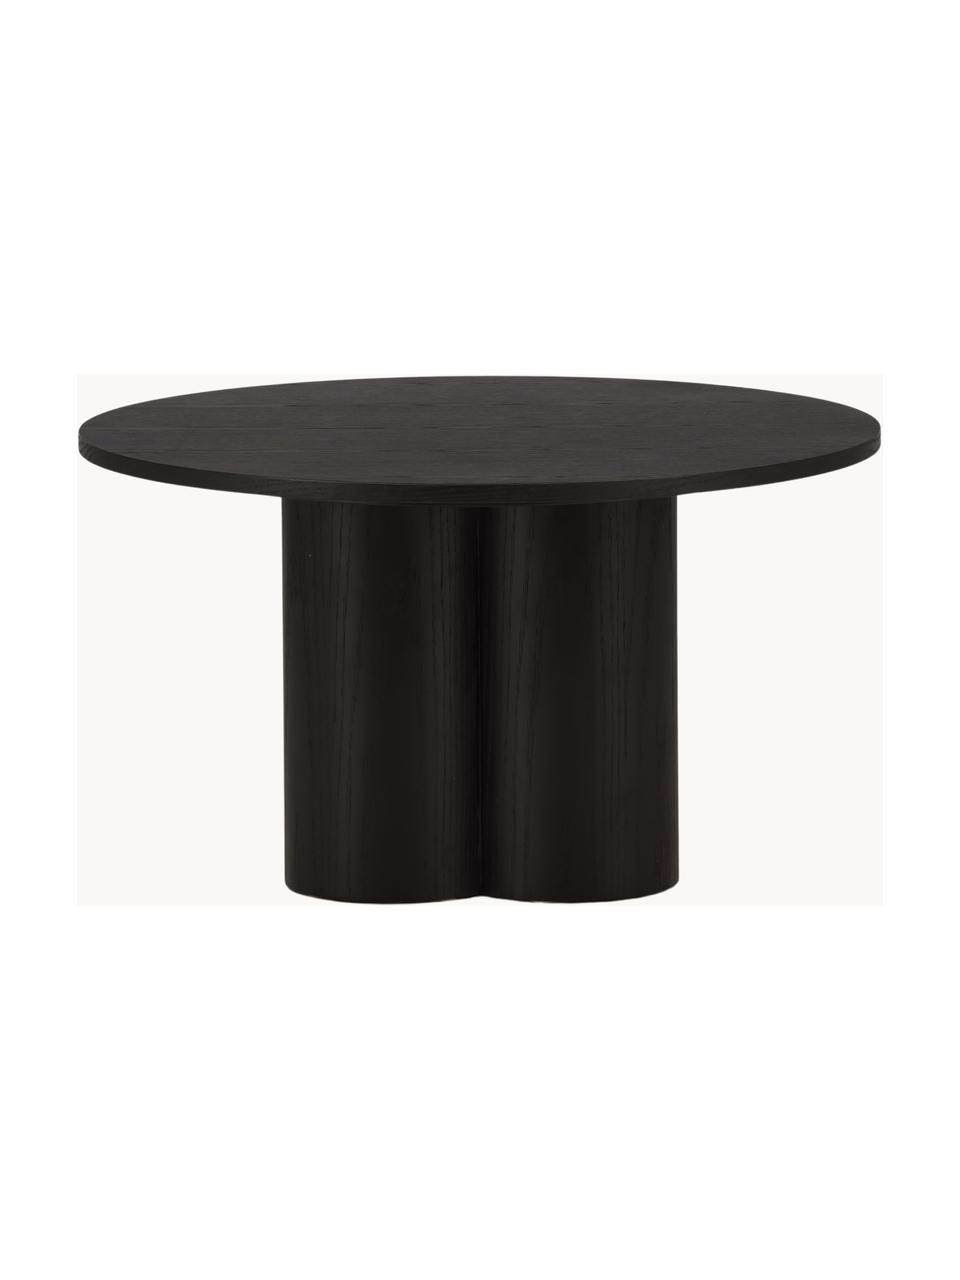 Table basse ronde en bois Olivia, MDF (panneau en fibres de bois à densité moyenne), Bois, noir laqué, Ø 80 cm